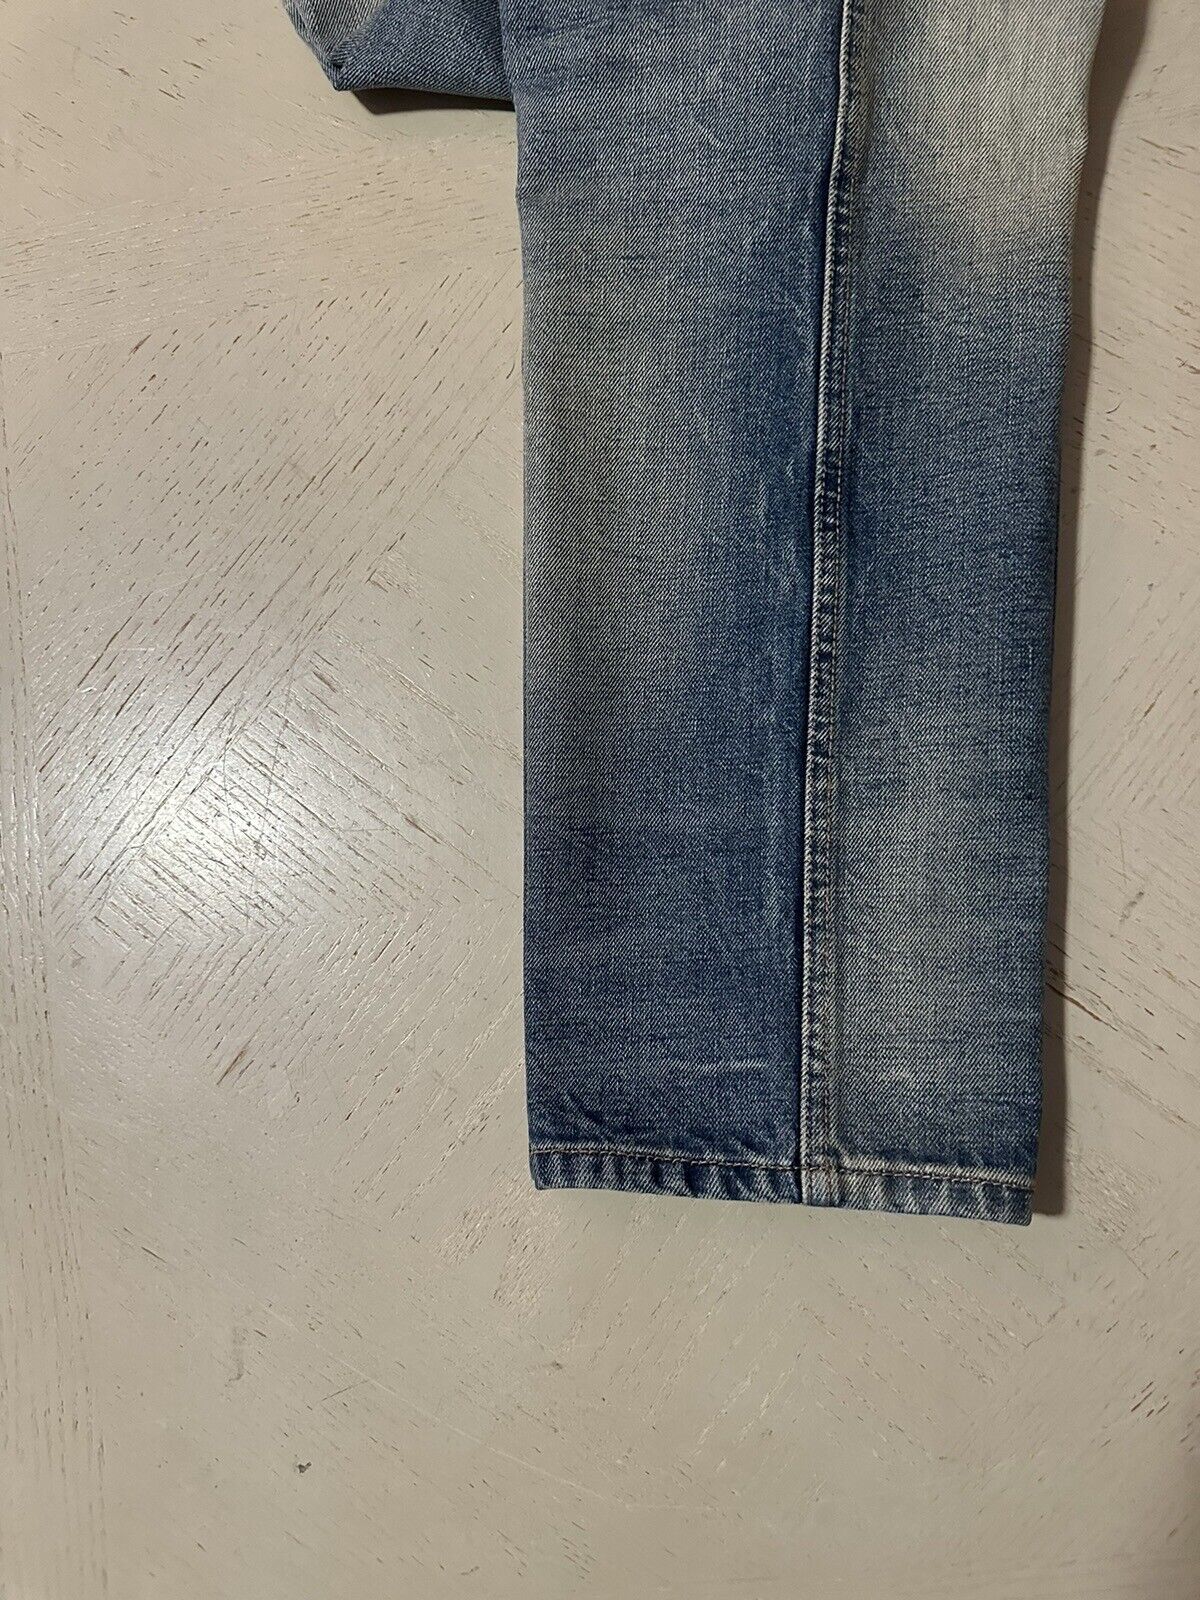 Новые мужские джинсы Gucci, синие джинсовые брюки, 36 долларов, США, Италия, 1280 долларов.